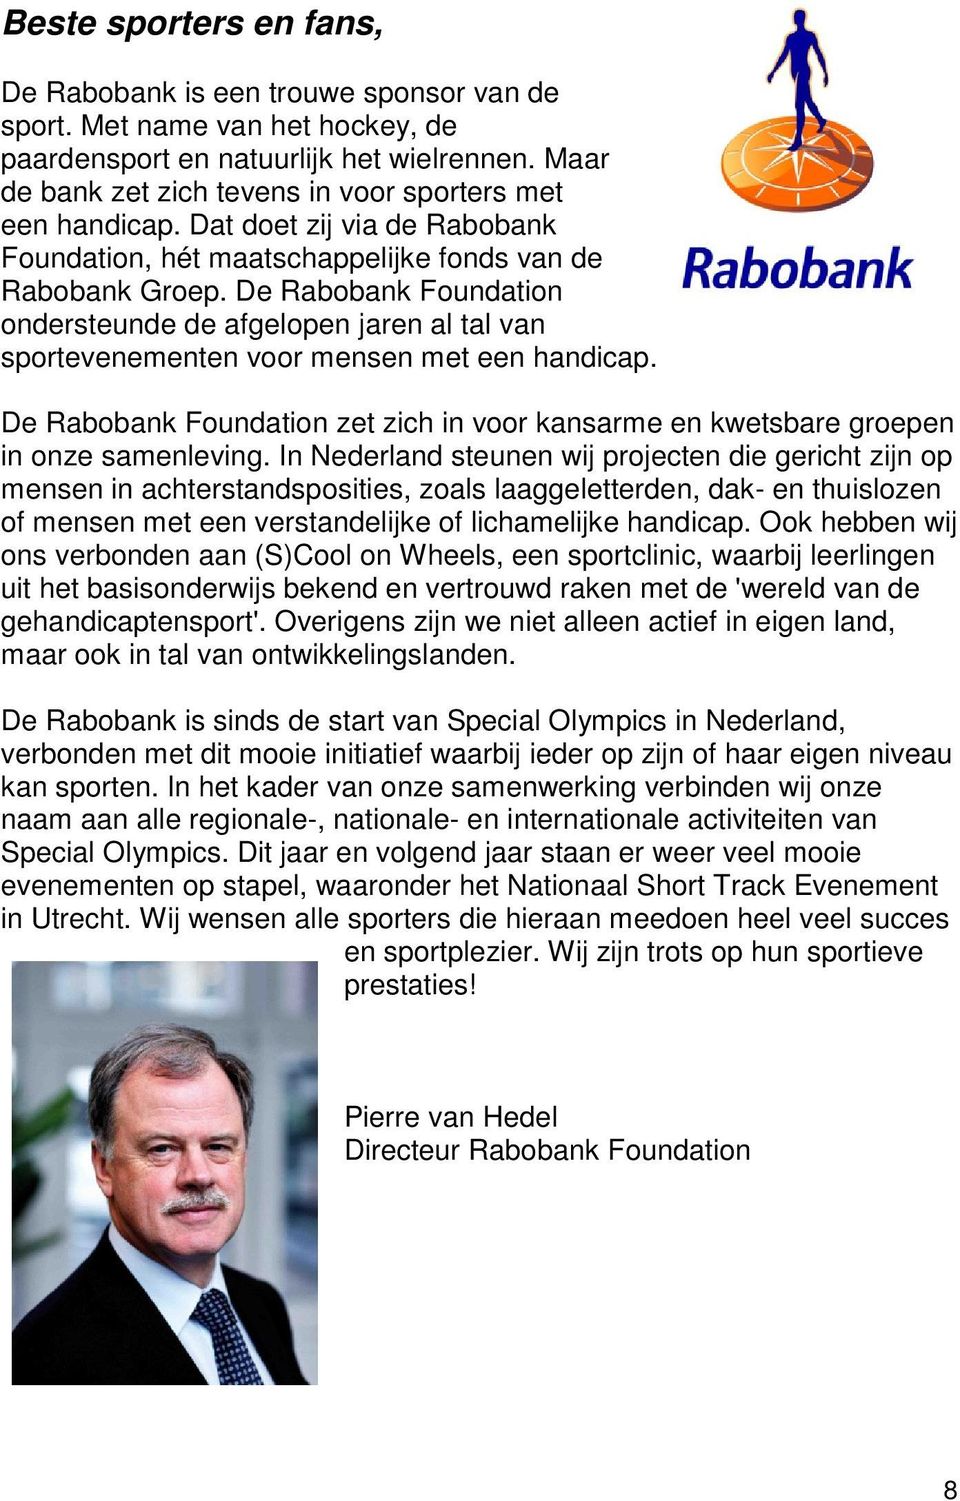 De Rabobank Foundation ondersteunde de afgelopen jaren al tal van sportevenementen voor mensen met een handicap.